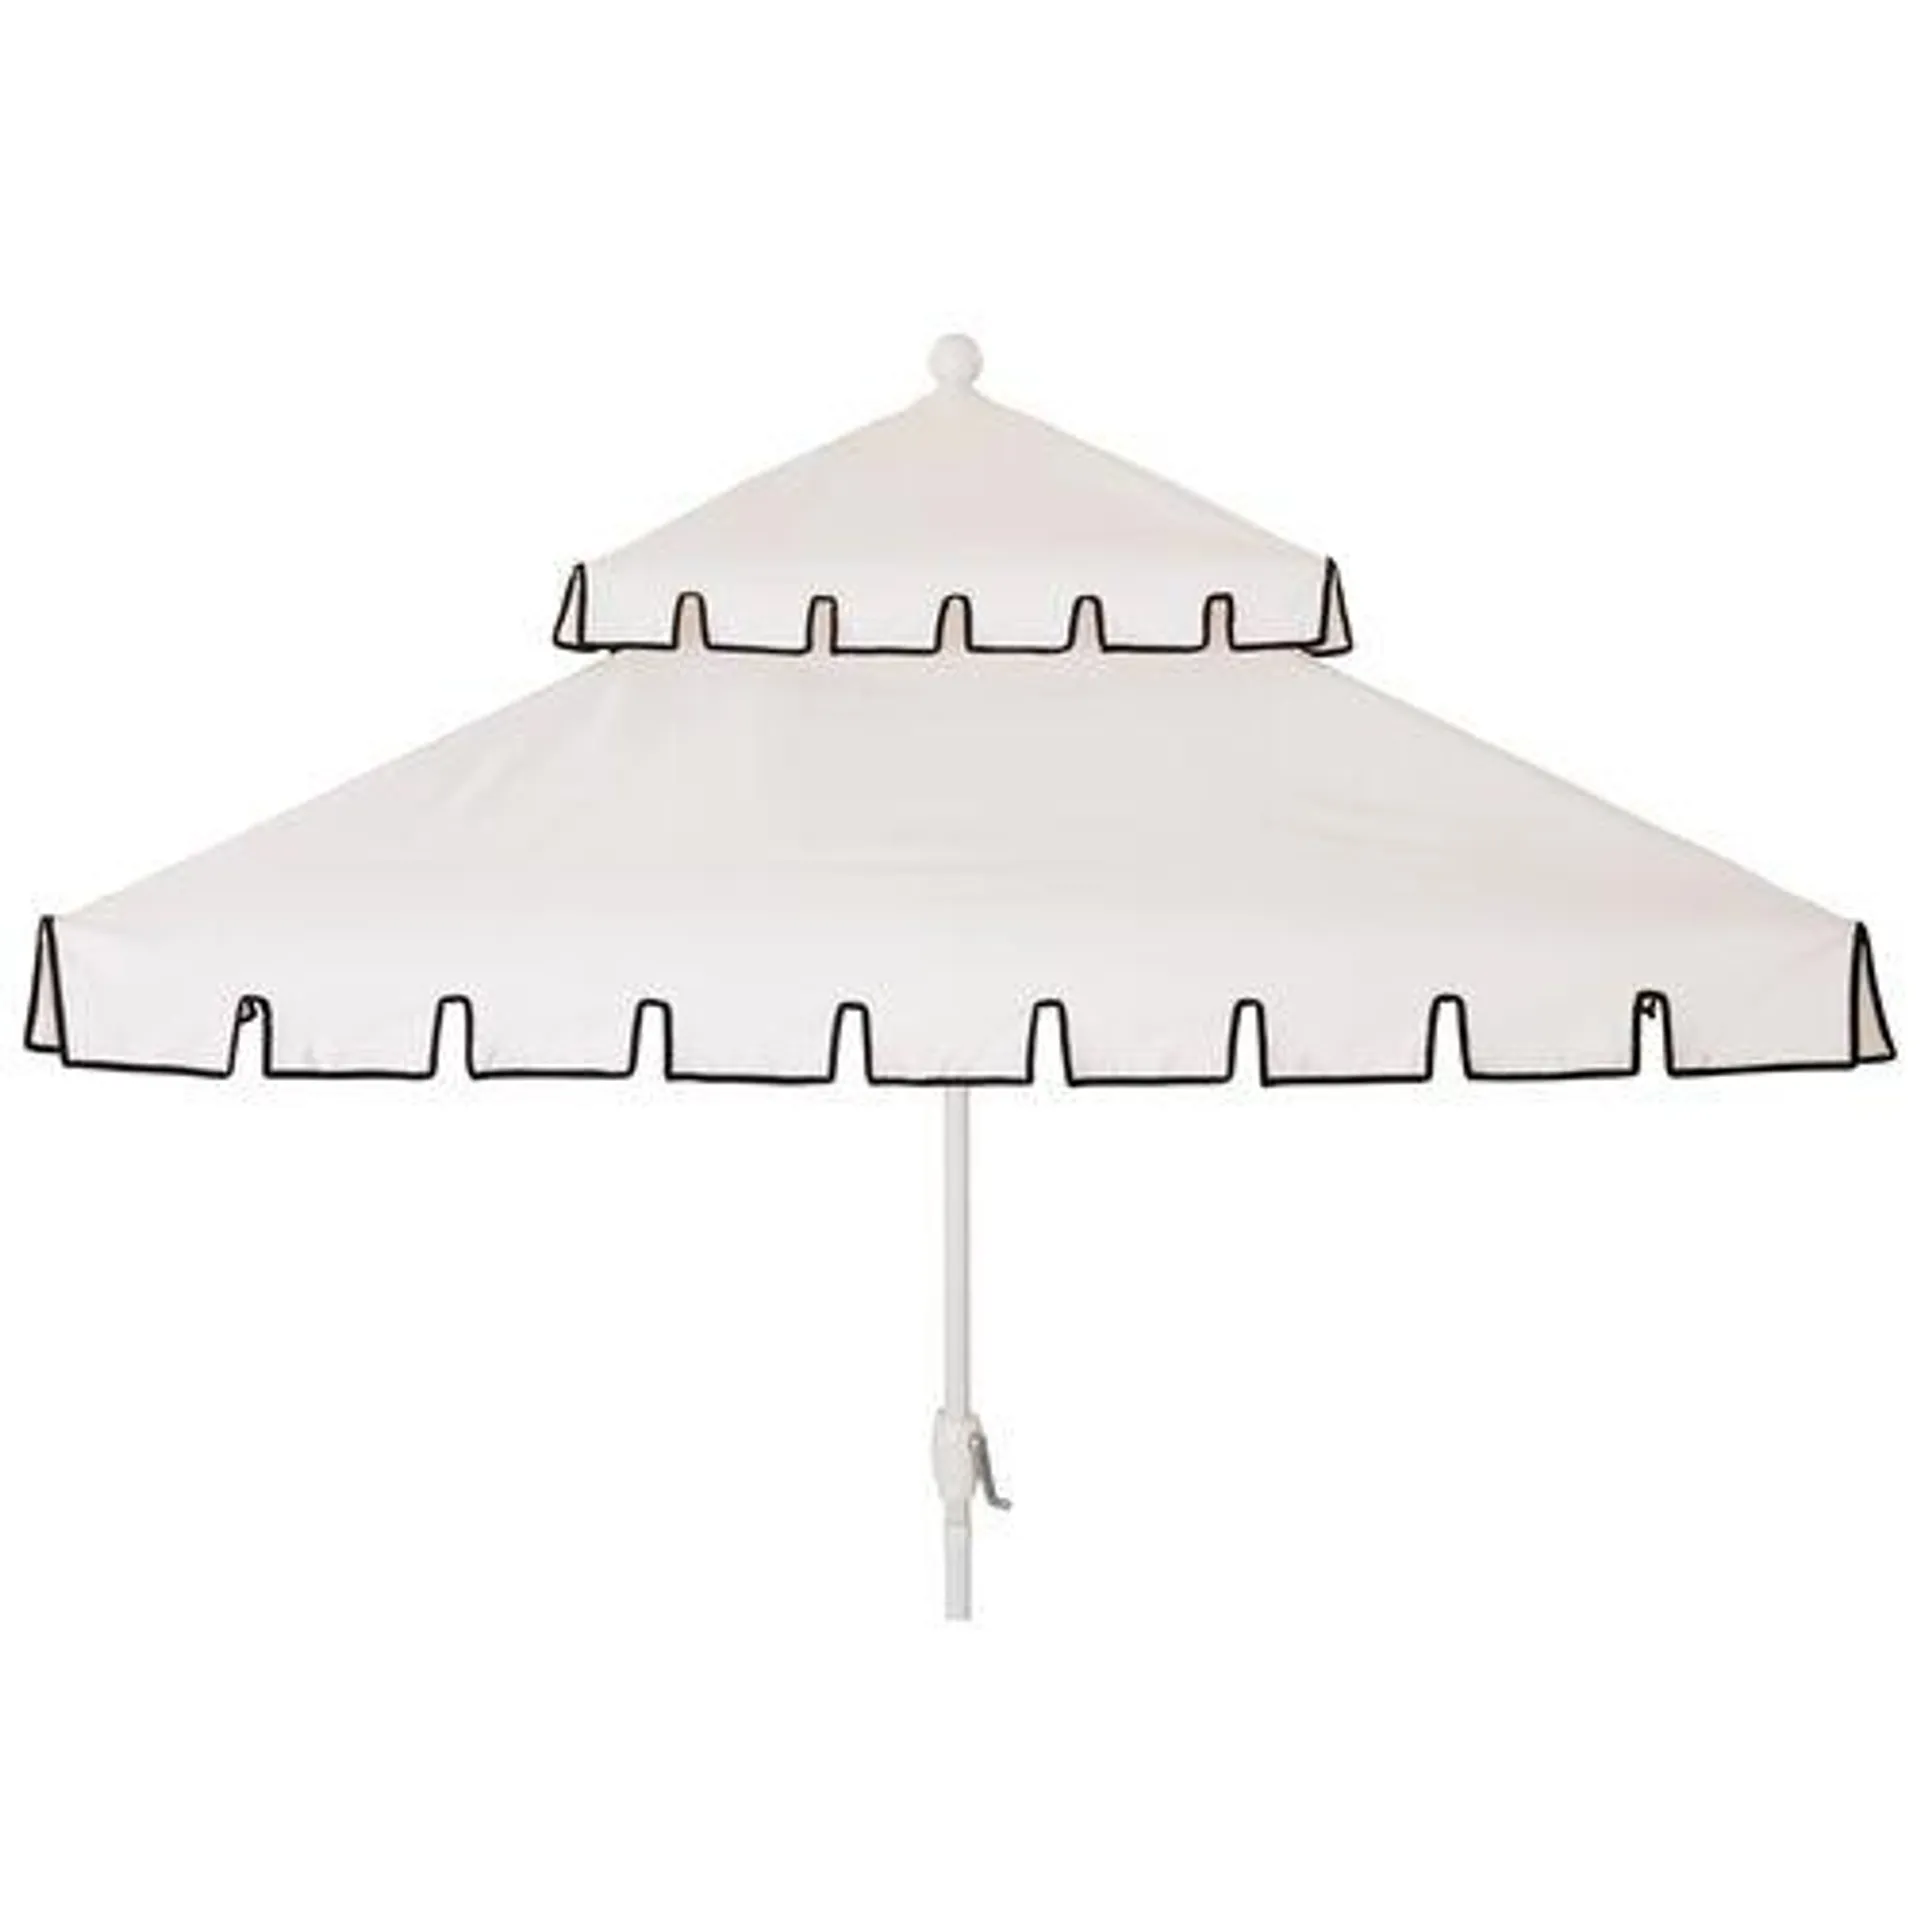 Liz Two-Tier Square Patio Umbrella, White/Black